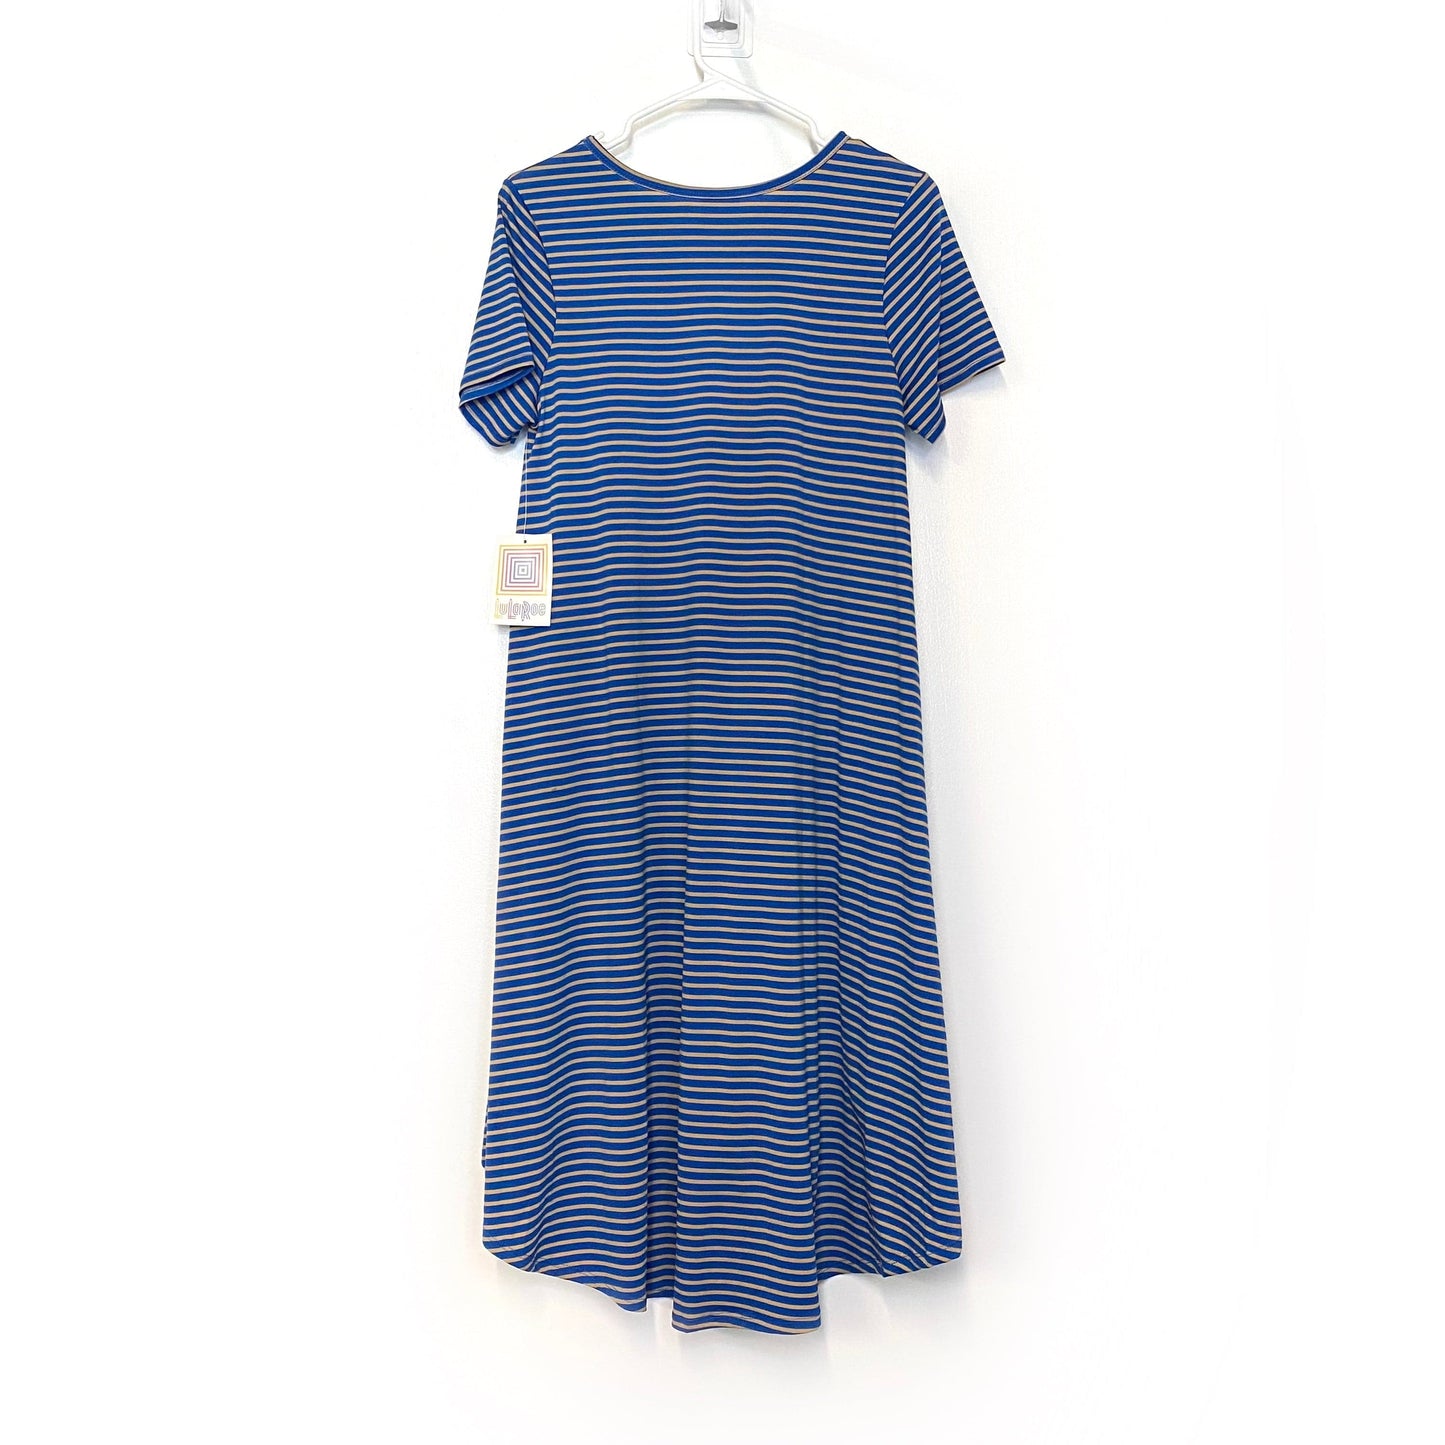 LuLaRoe Womens S Beige/Blue Striped 'Carly' S/s Swing Dress NWT